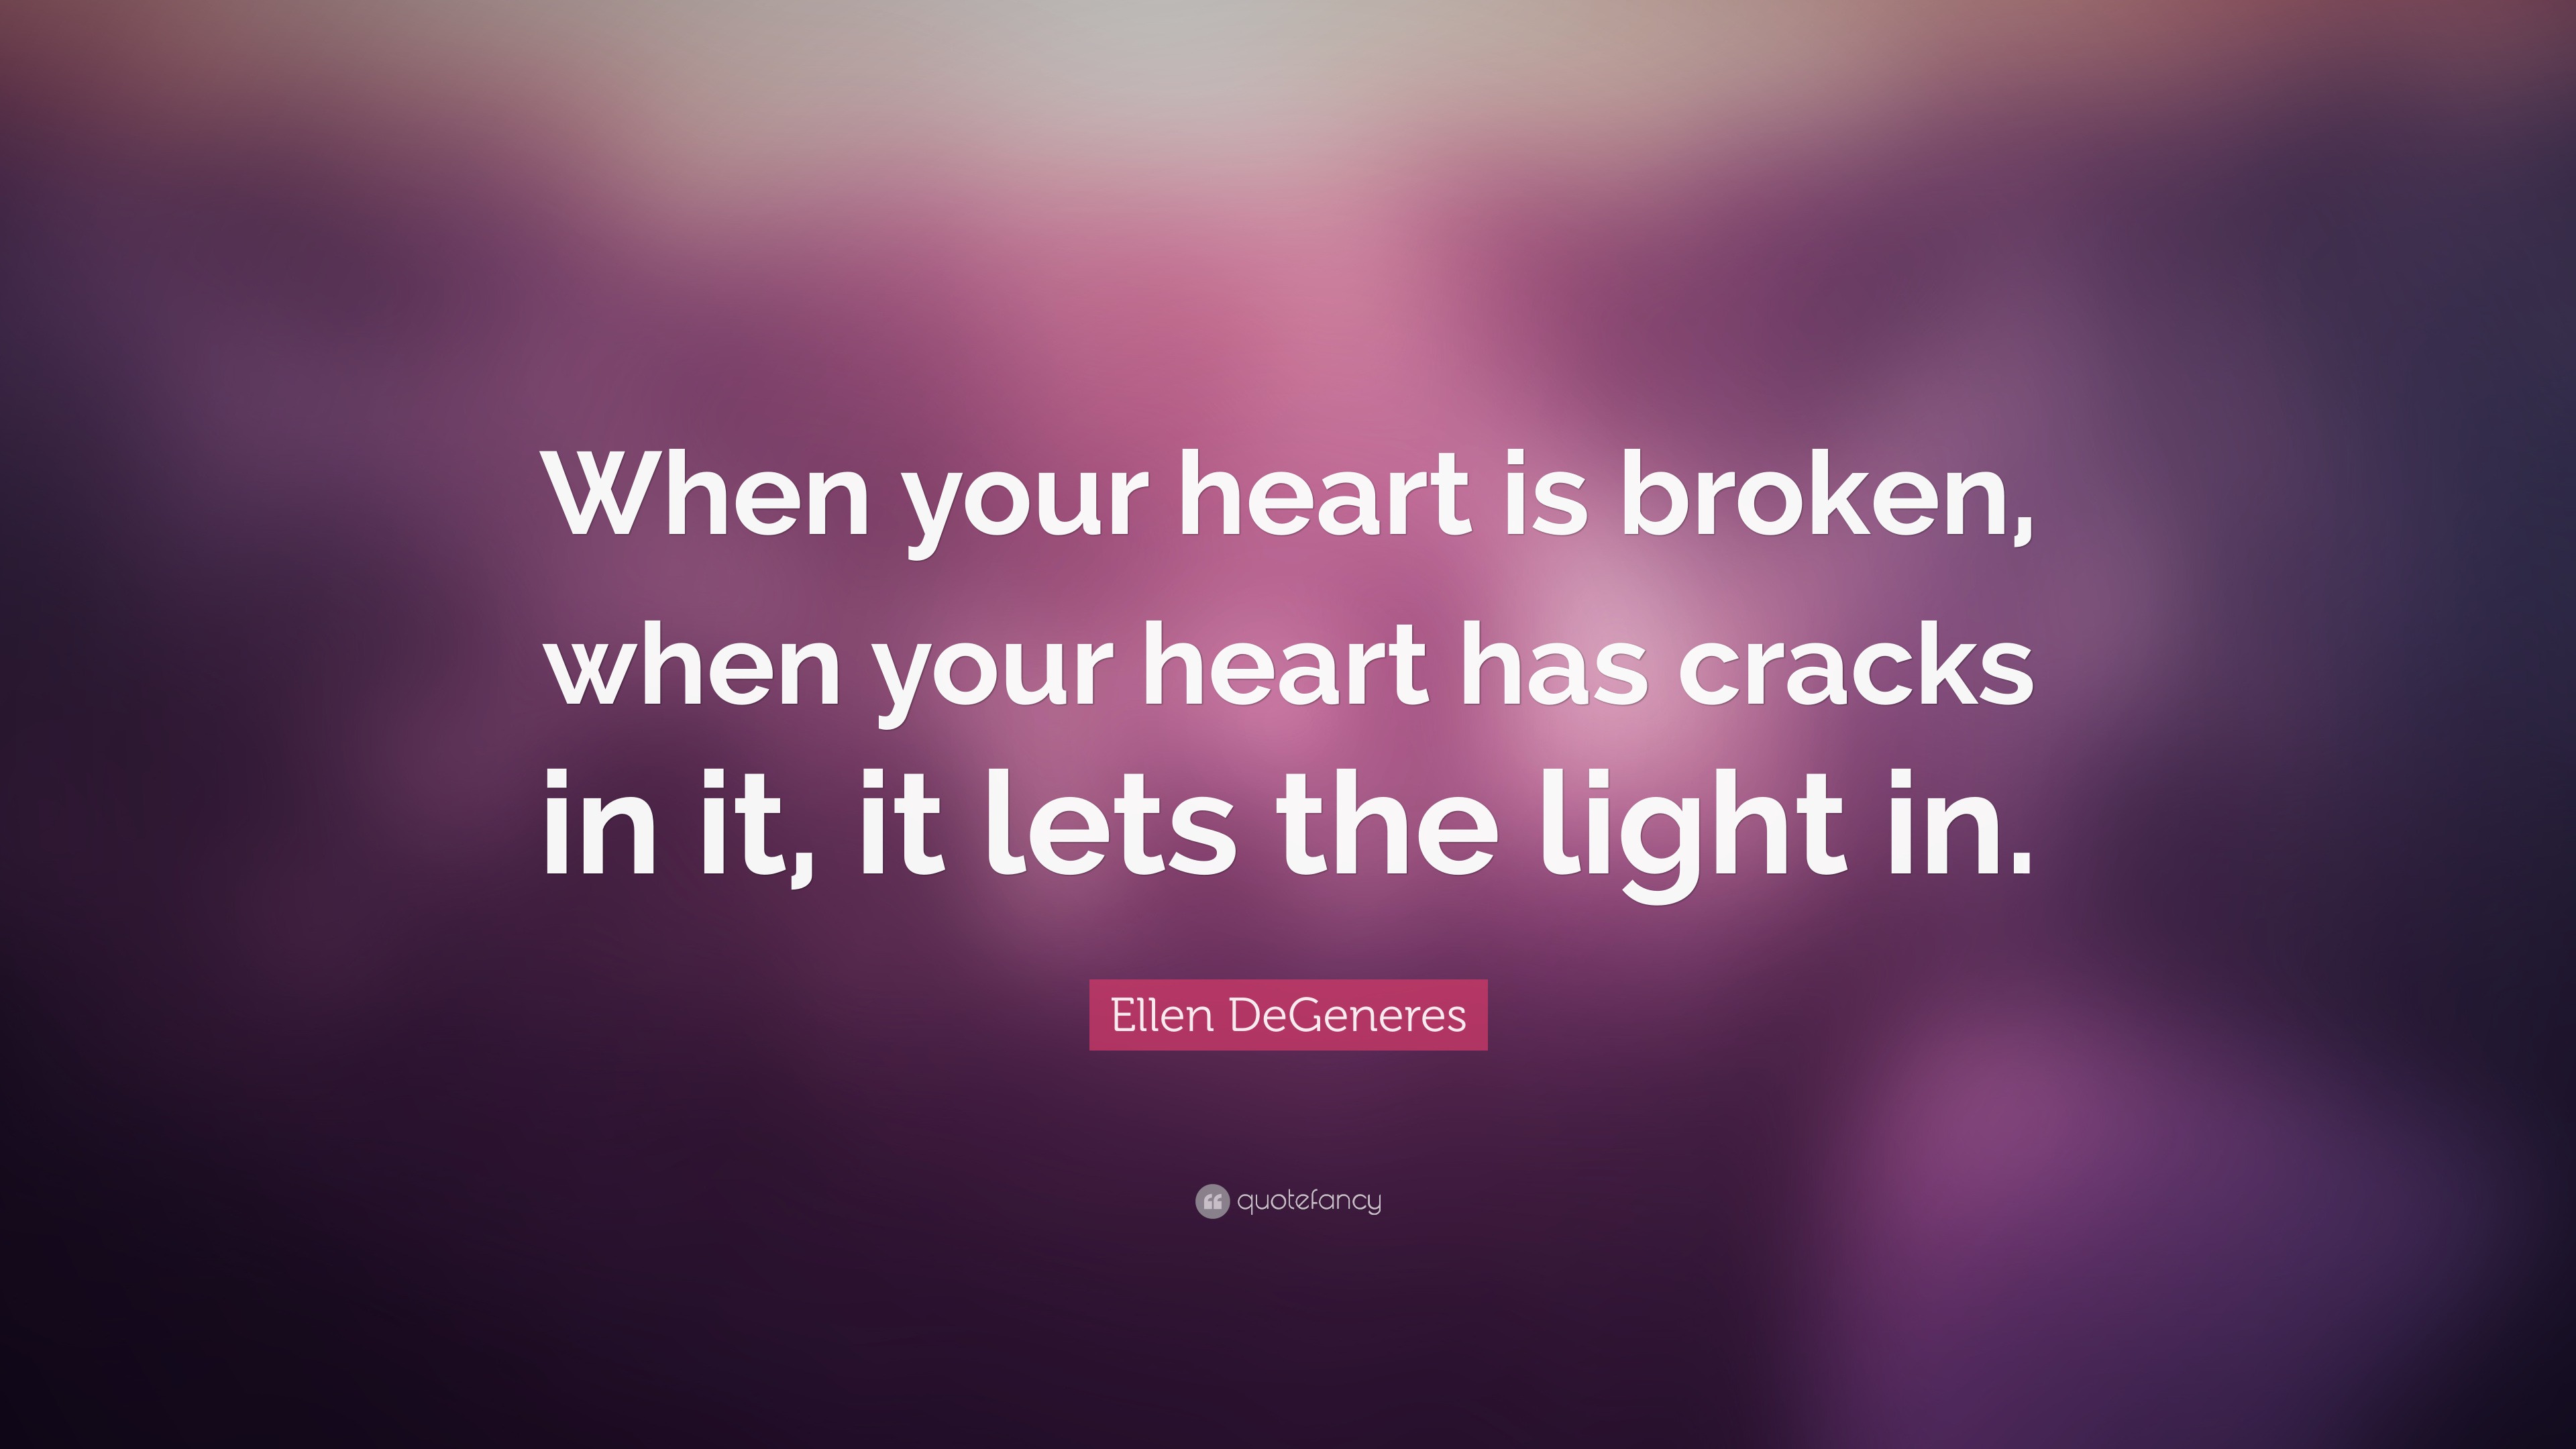 Ellen DeGeneres Quote: “When your heart is broken, when your heart has ...